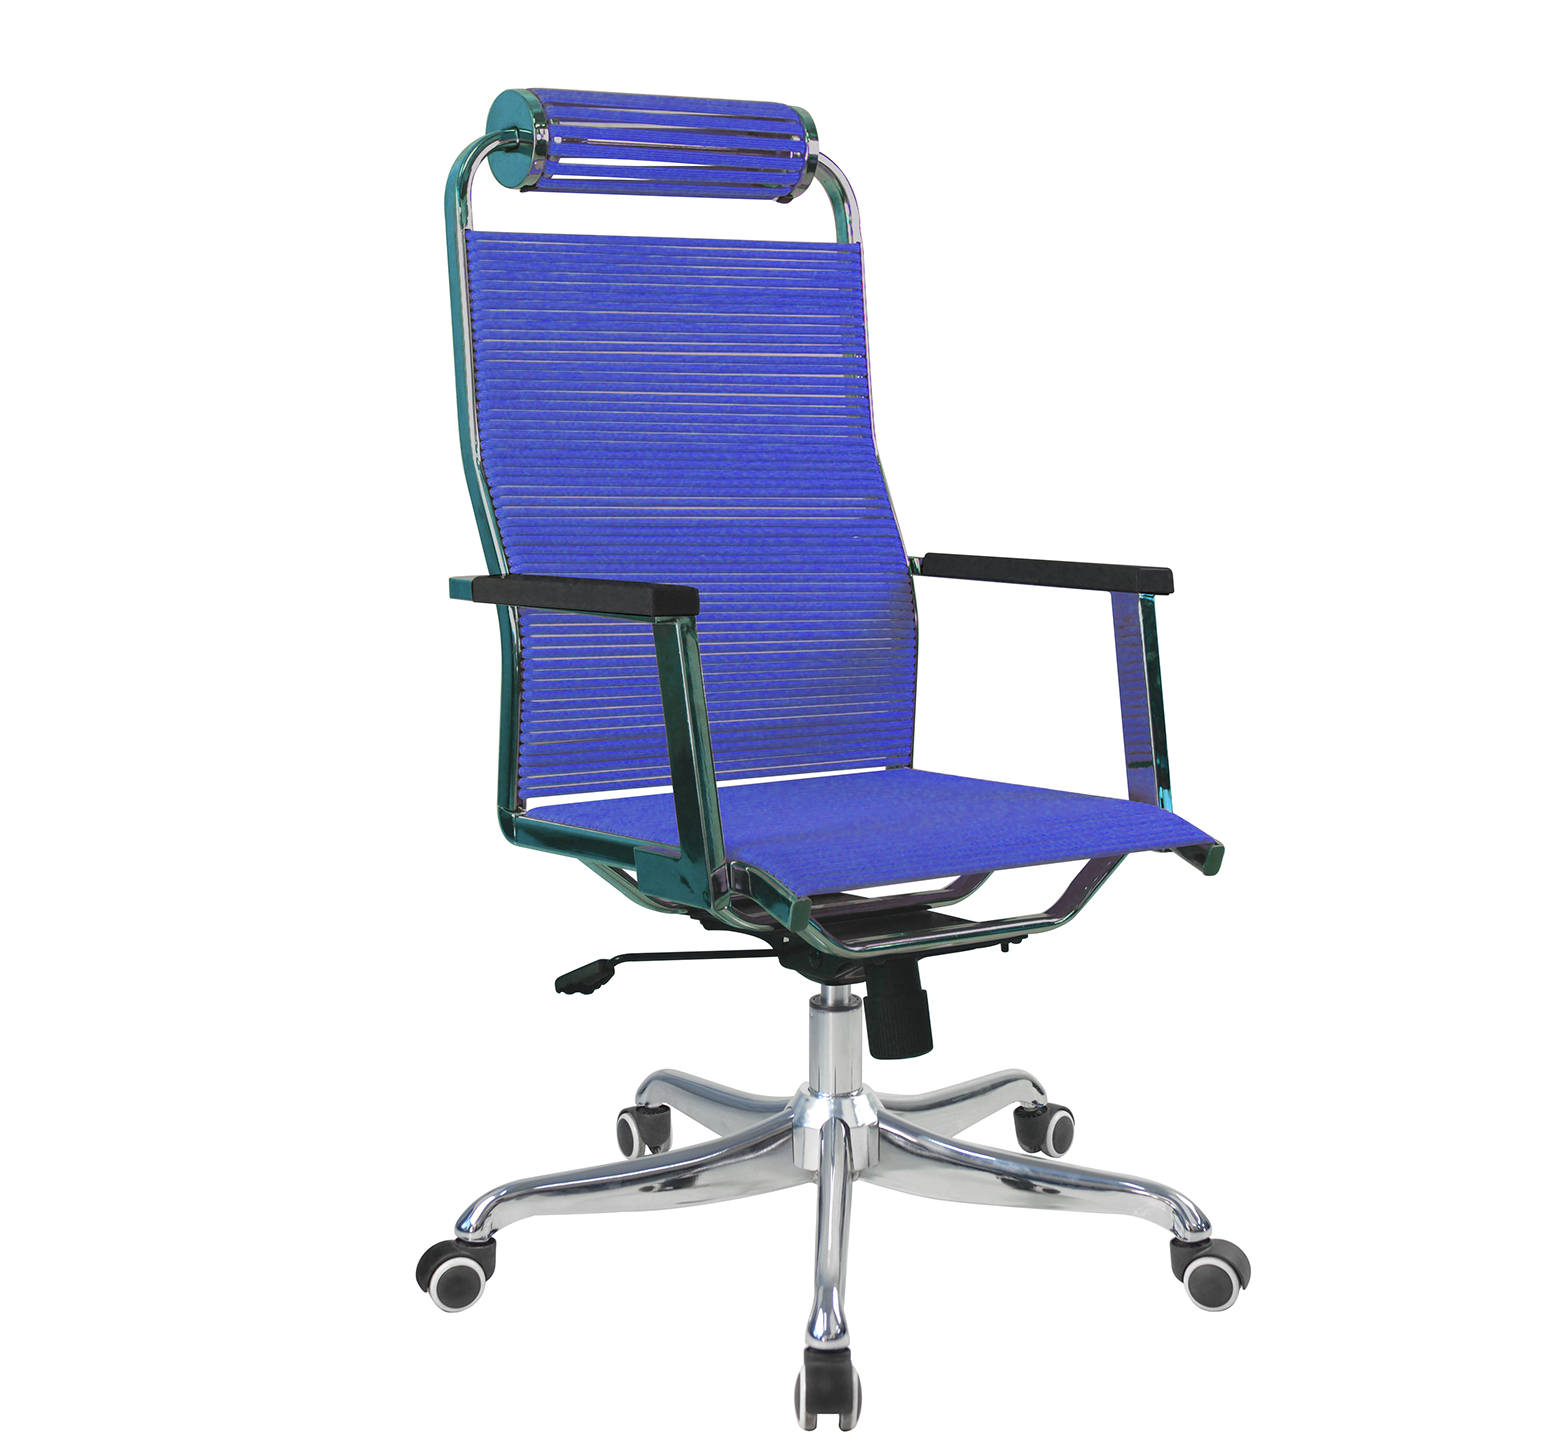 厂家直销804BG老板椅升降多功能办公职员椅家用高靠背职员电脑椅